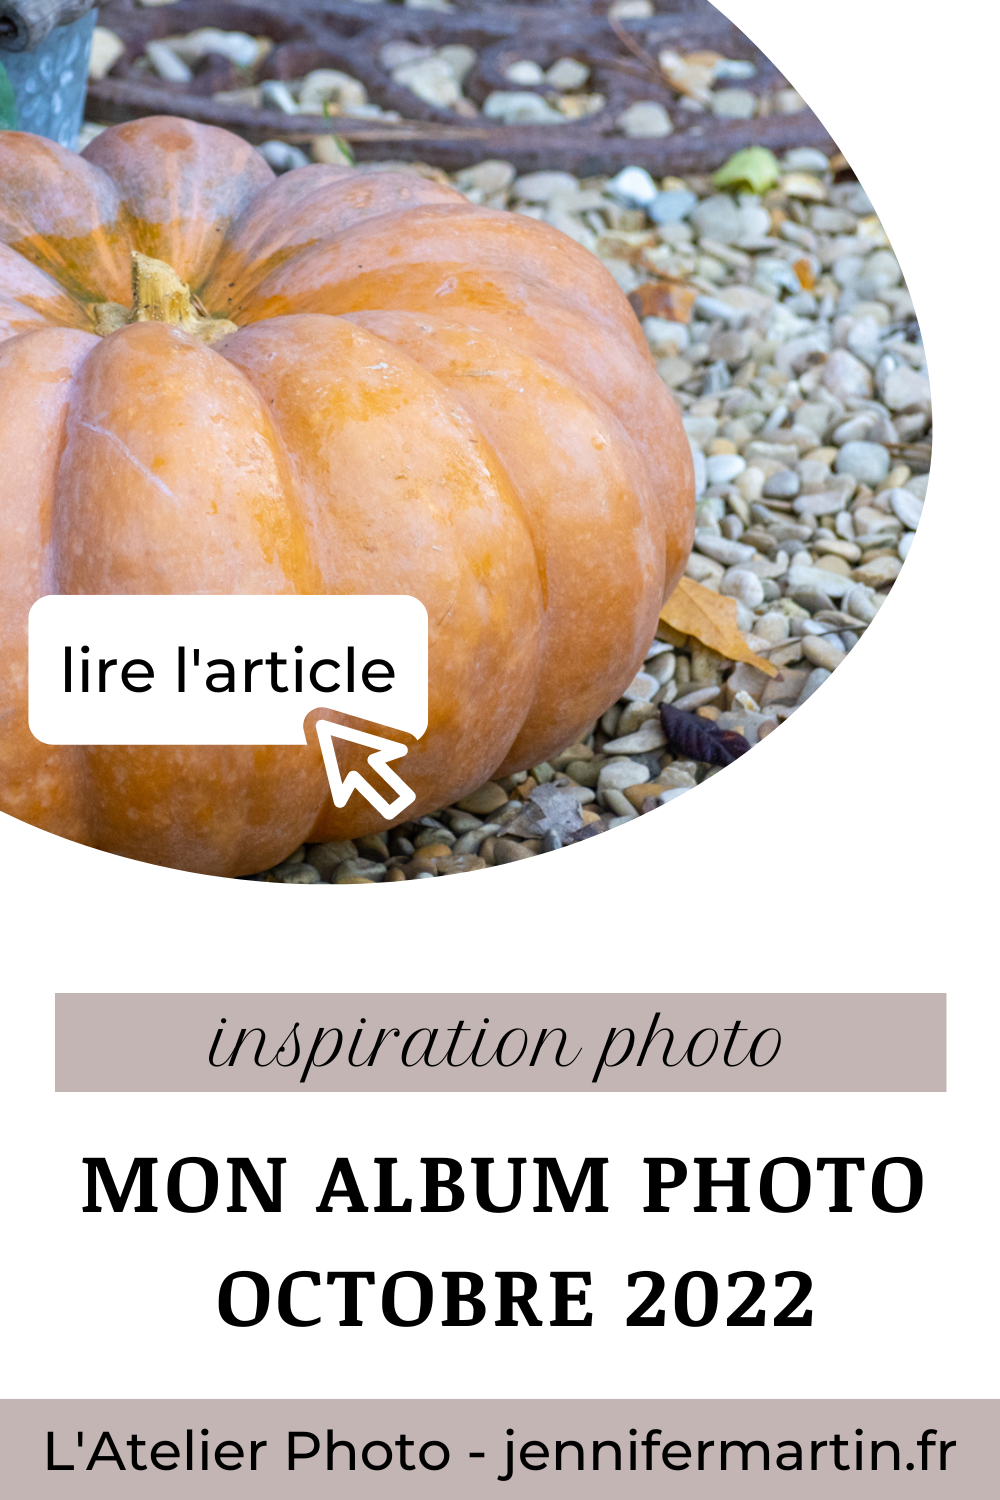 Projet photo 365 - photographier l'automne